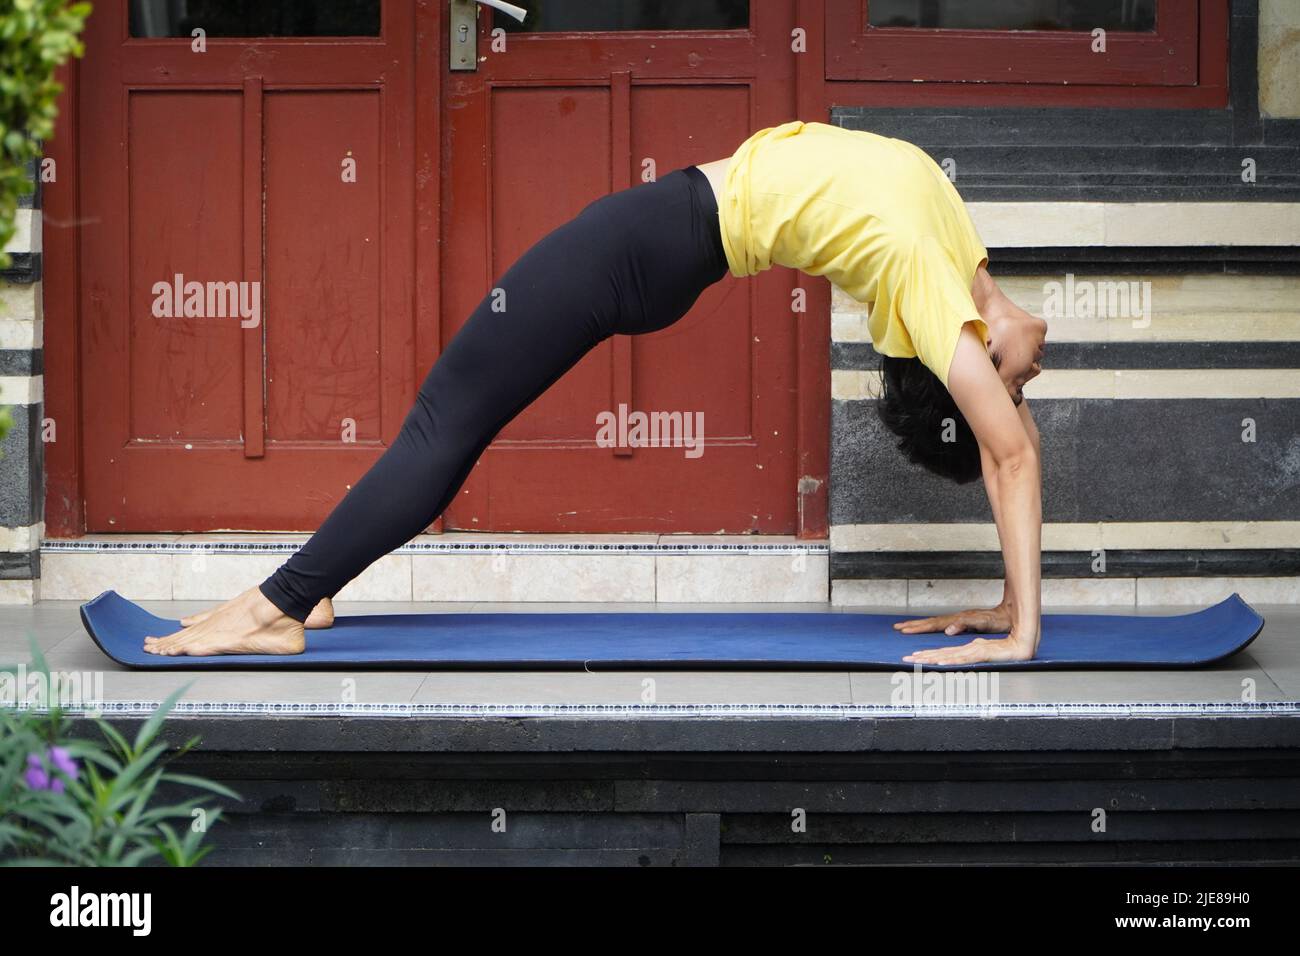 Sur sa terrasse, une jeune fille asiatique d'apparence étonnante pratique le yoga tout en portant une coupe courte, une chemise jaune et des leggings noirs. S Banque D'Images